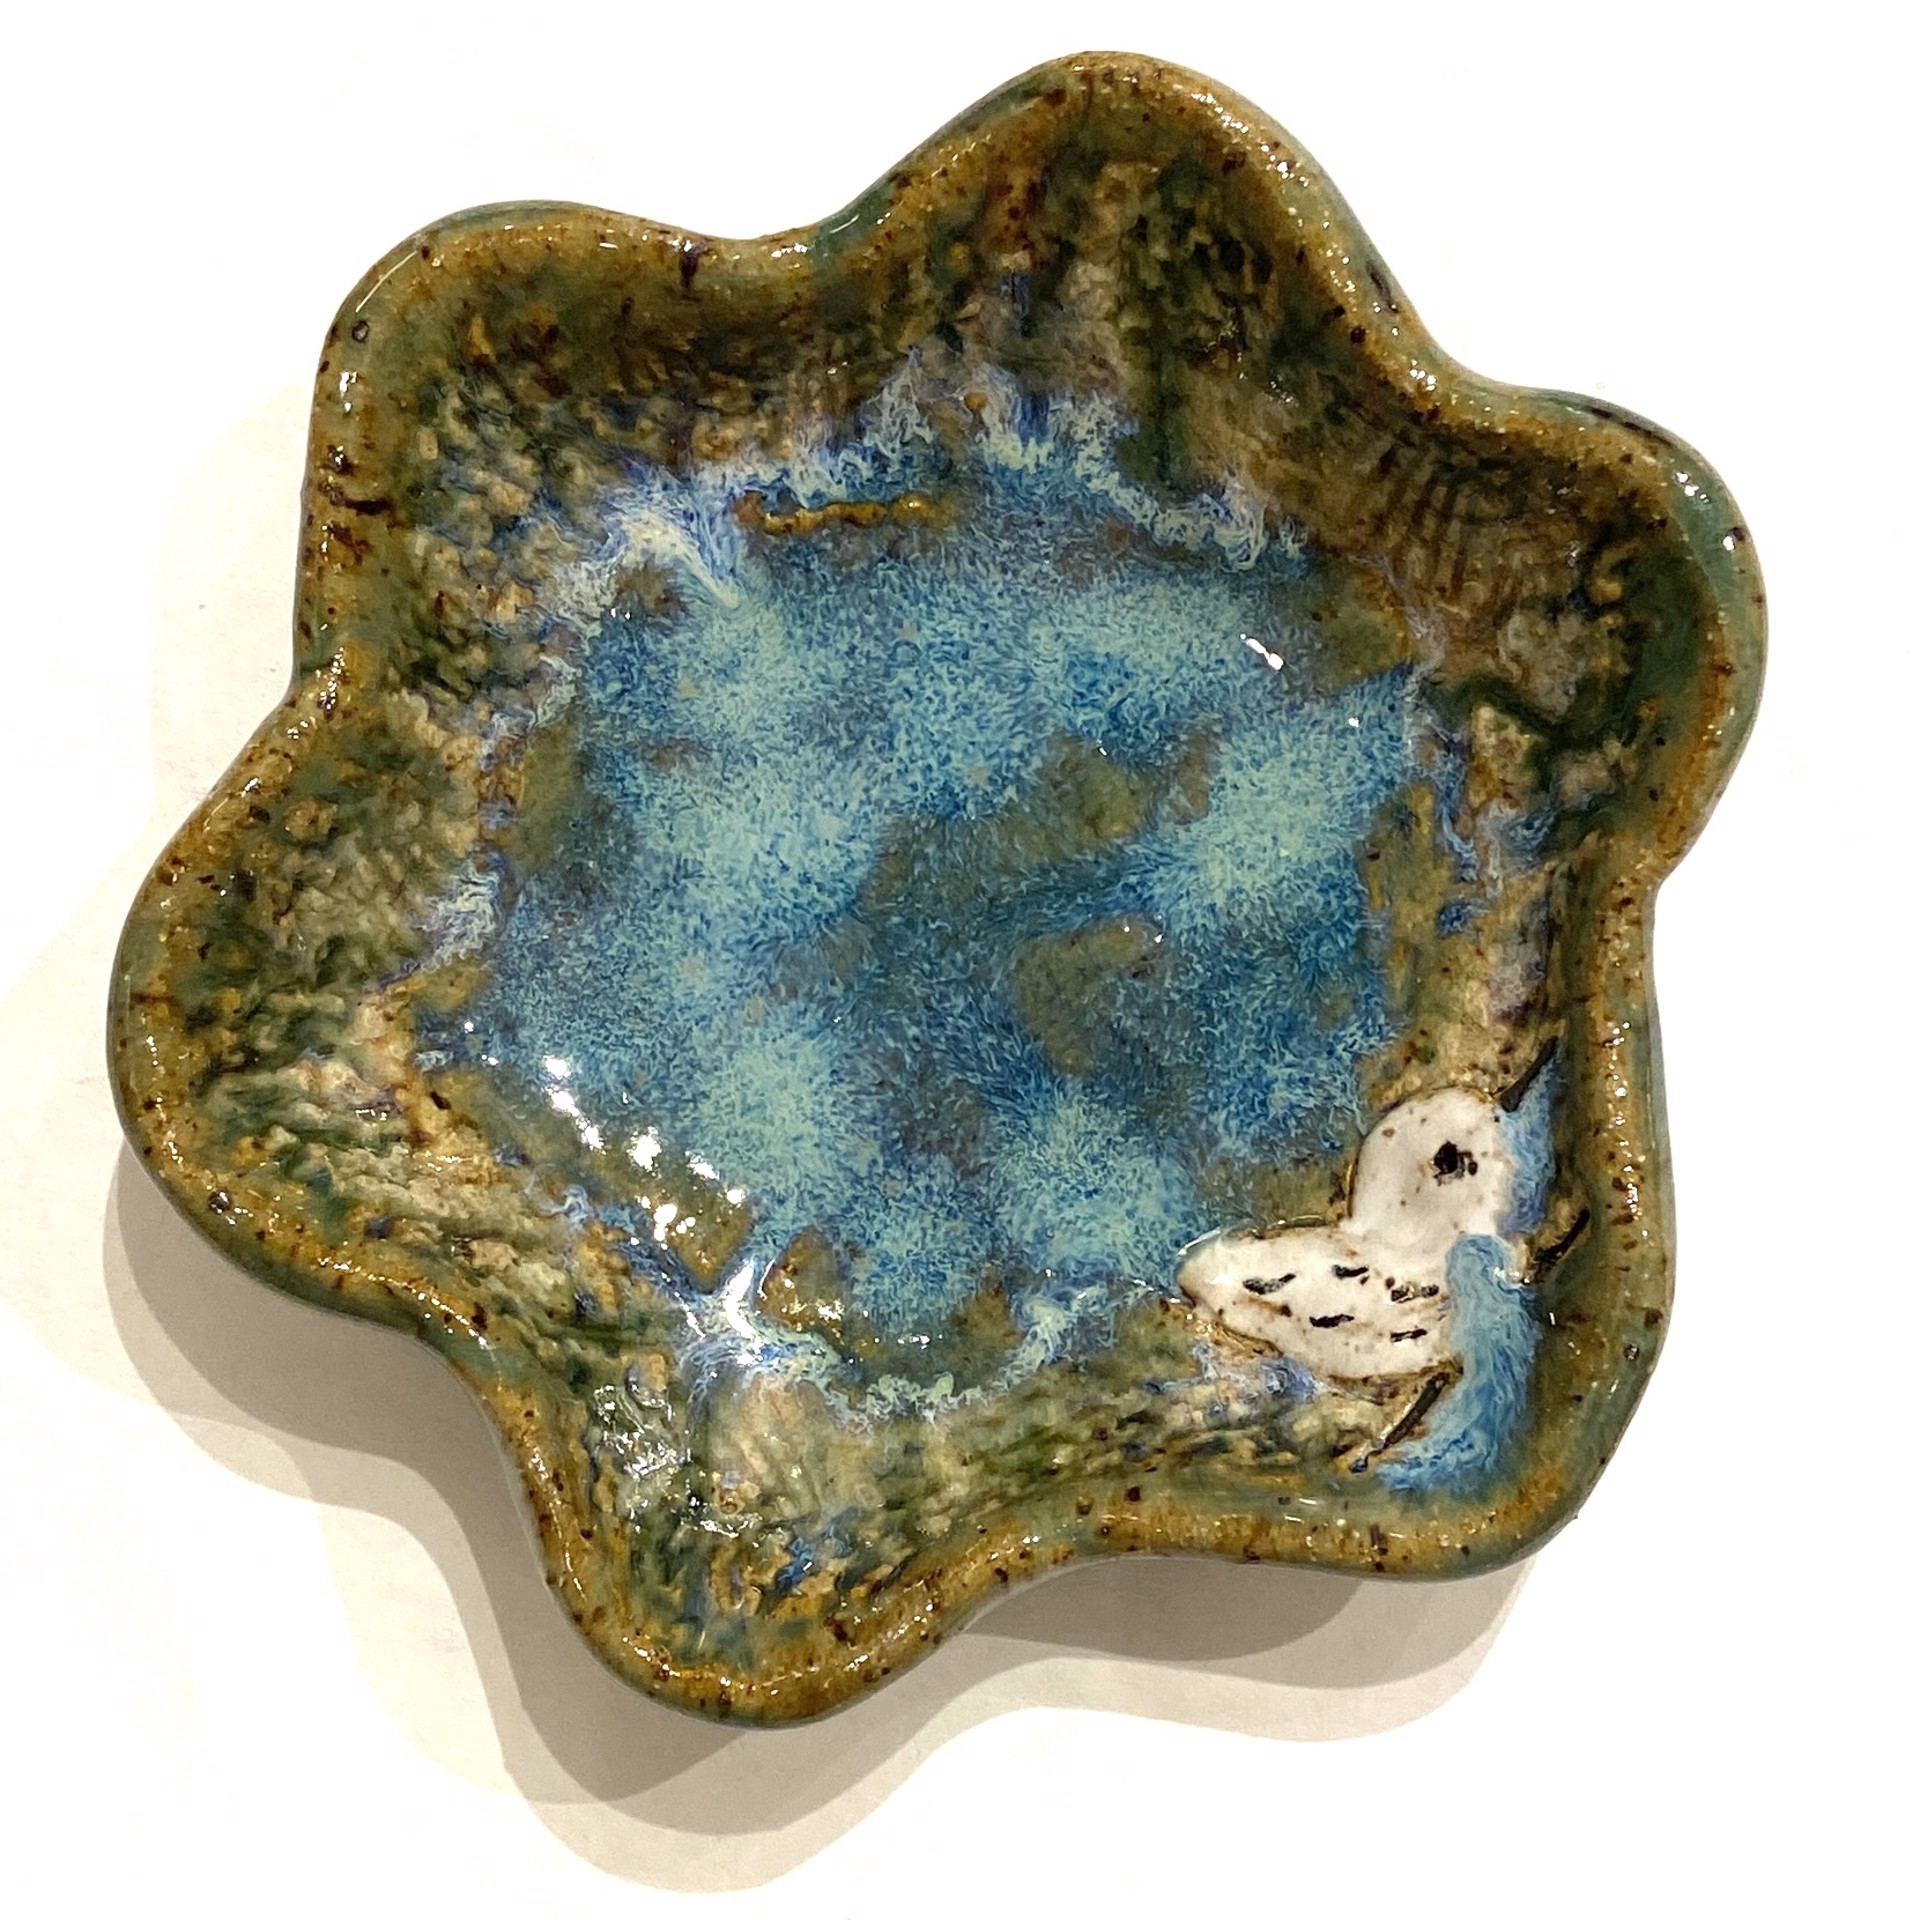 X-Small Pool Dish with Sandpiper (Blue Glaze) LG23-1069 by Jim & Steffi Logan